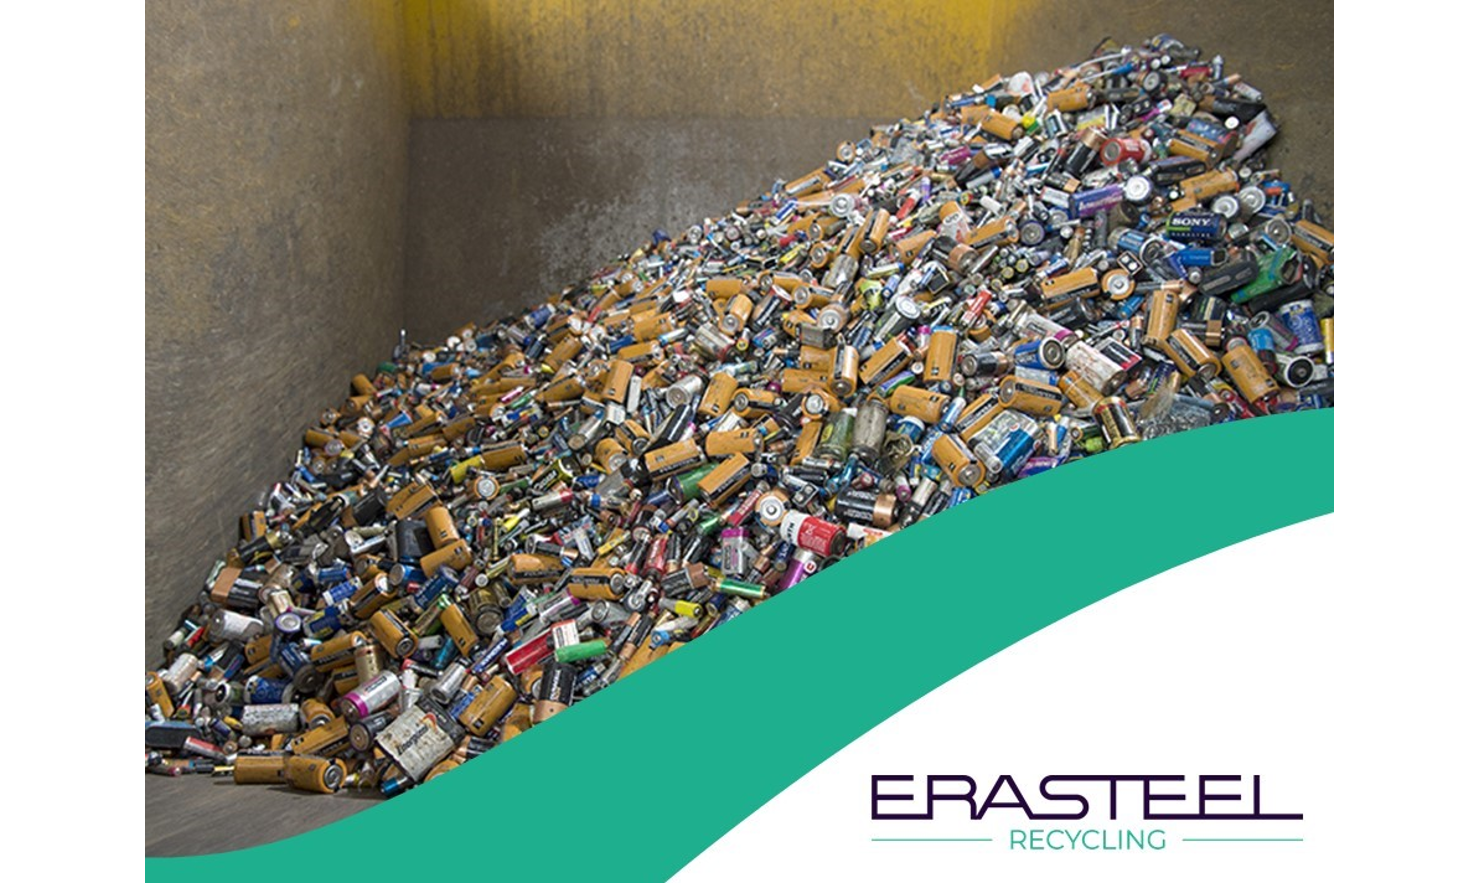 ERASTEEL relaunches its battery - Erasteel